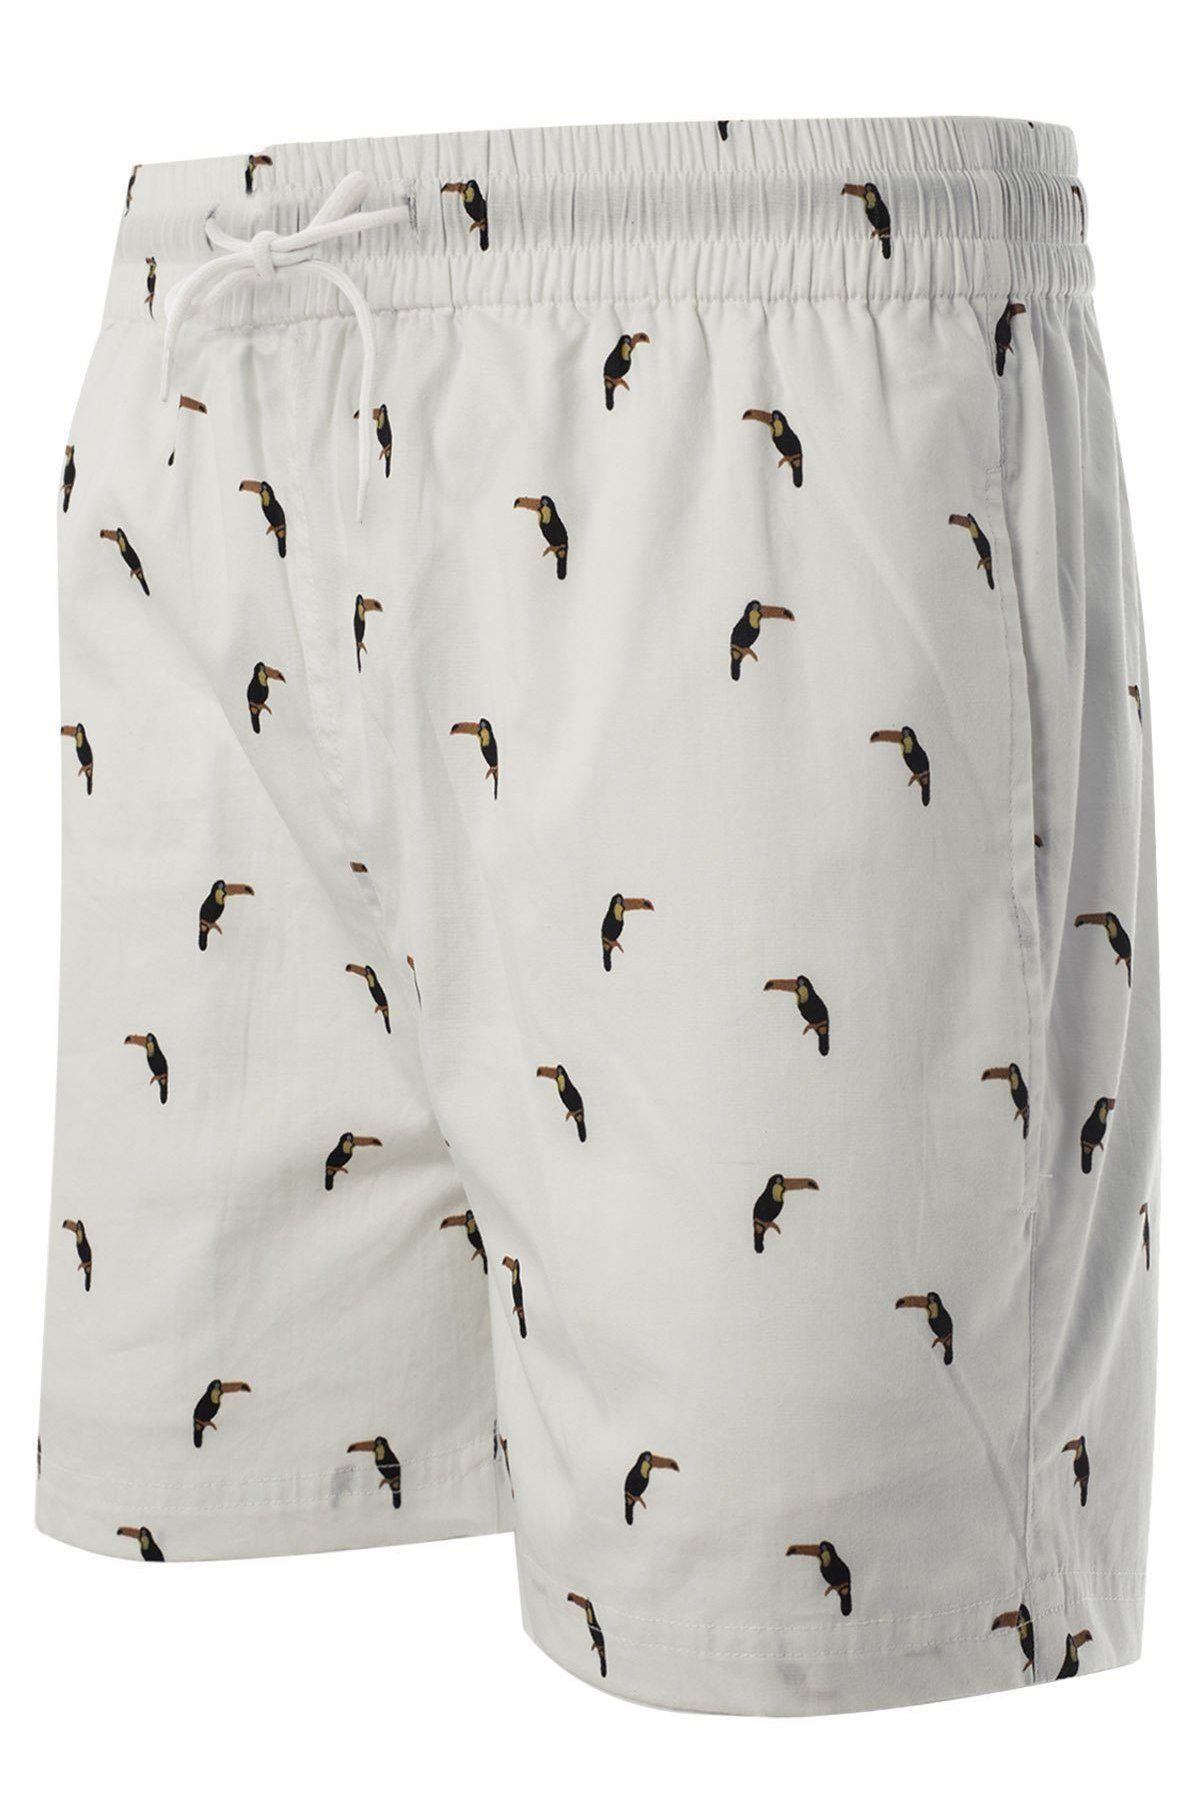 Toucan Shorts White